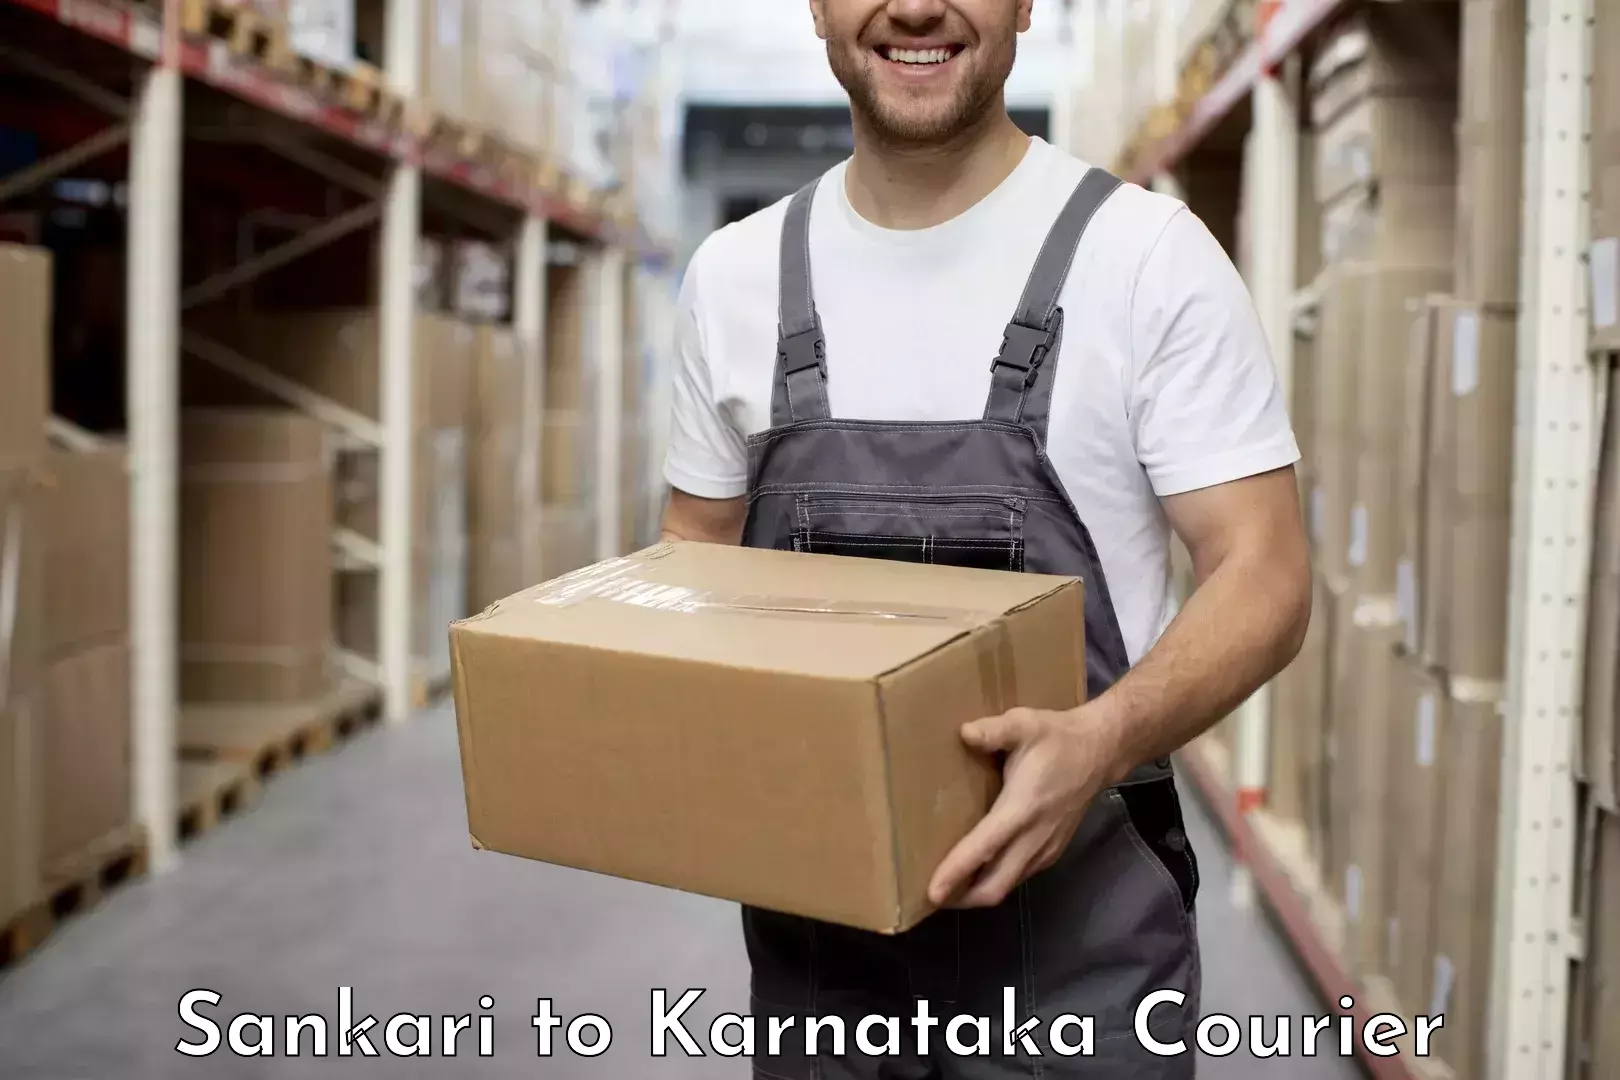 Customer-focused courier Sankari to Srinivaspur